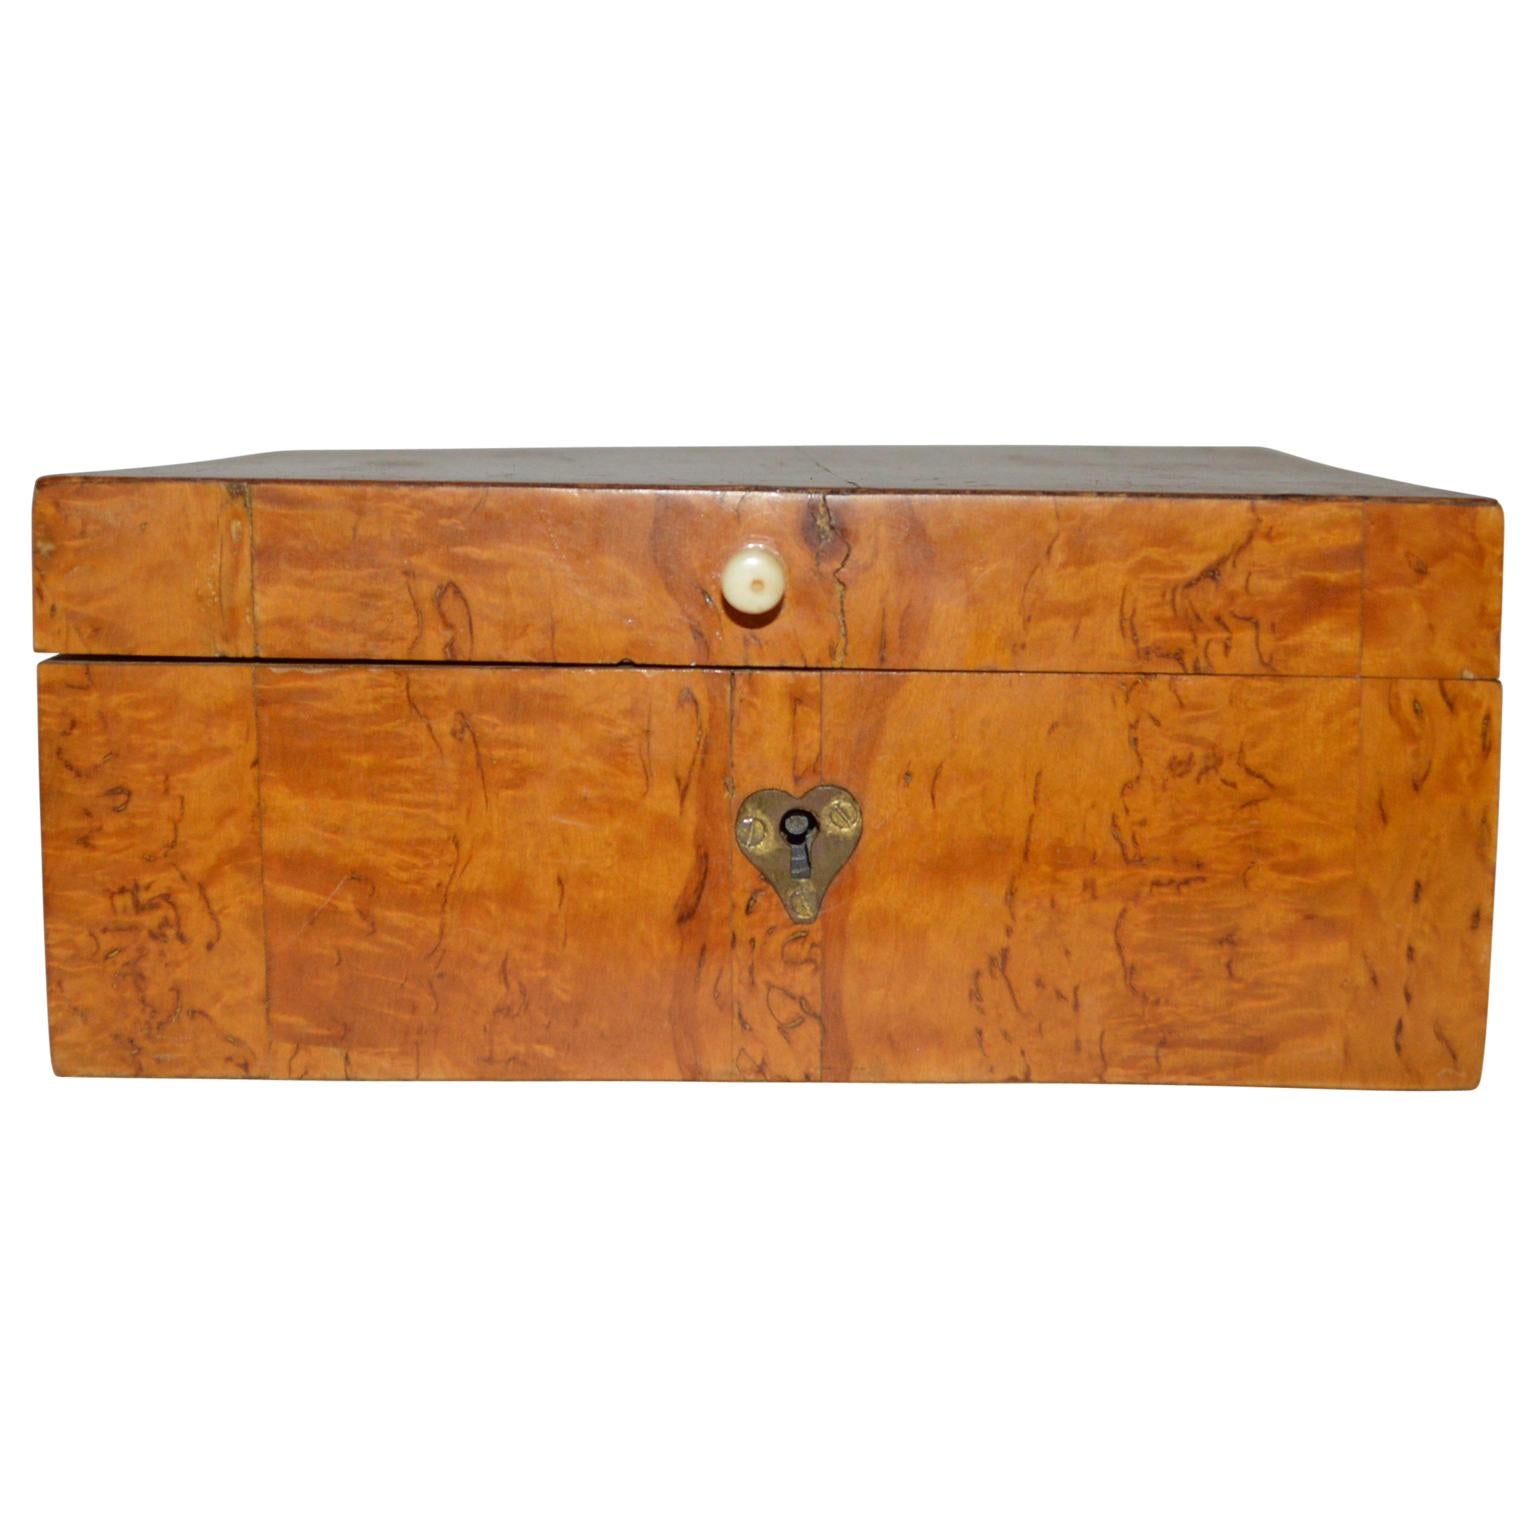 Boîte à bijoux suédoise du 19e siècle en placage de bois de bouleau.

La boîte a un cœur en laiton pour la serrure et un bouton en bois de cerf.